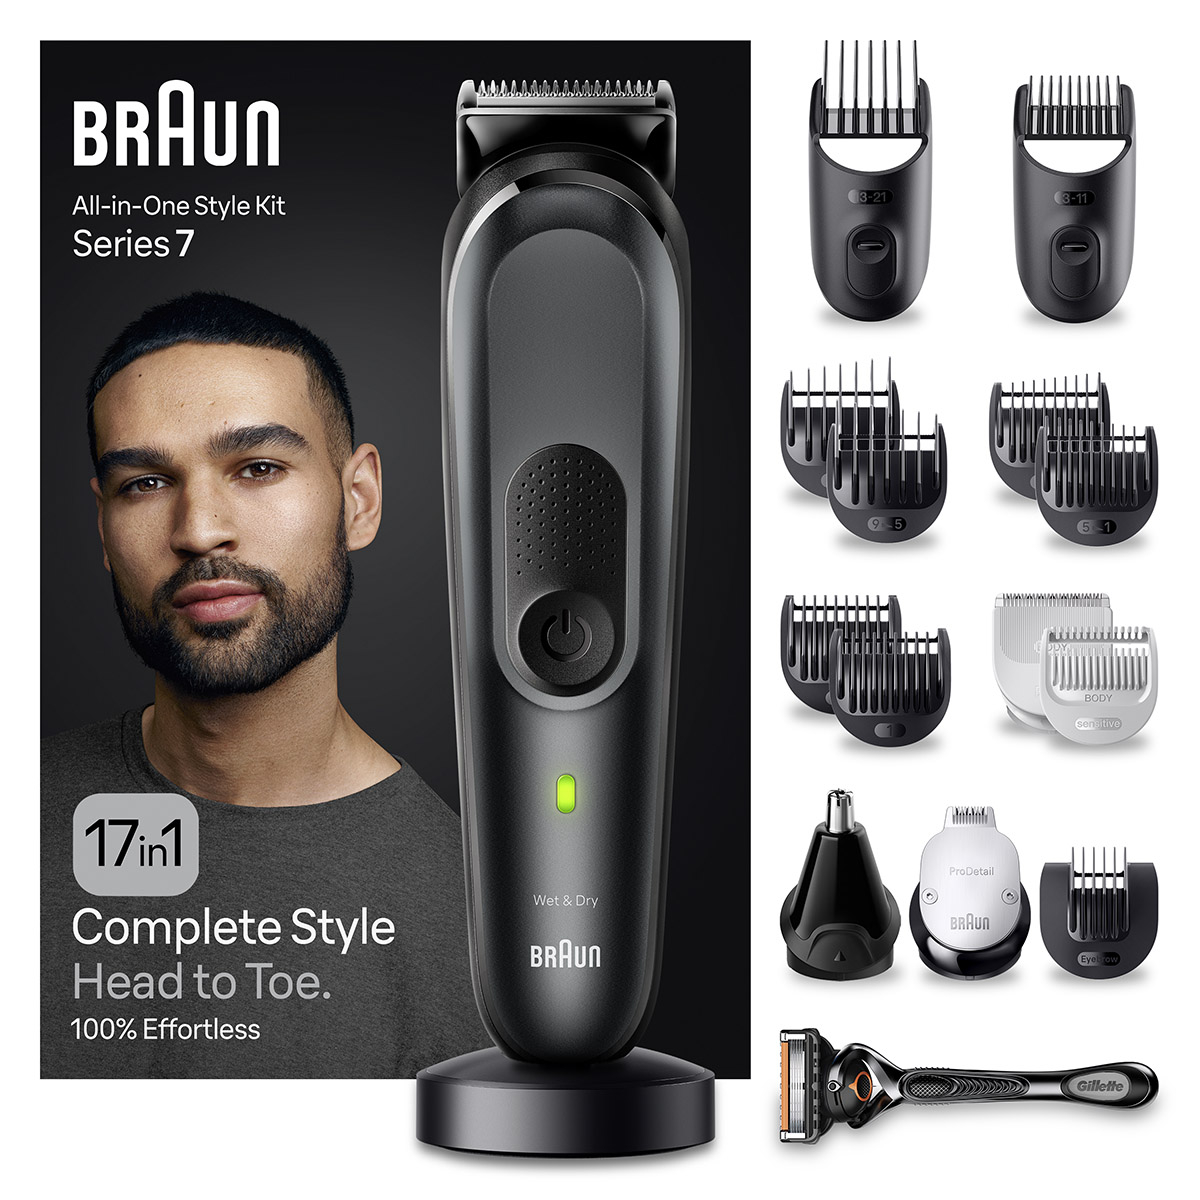 Máquinas de Barbear, Philips, Braun e Mais